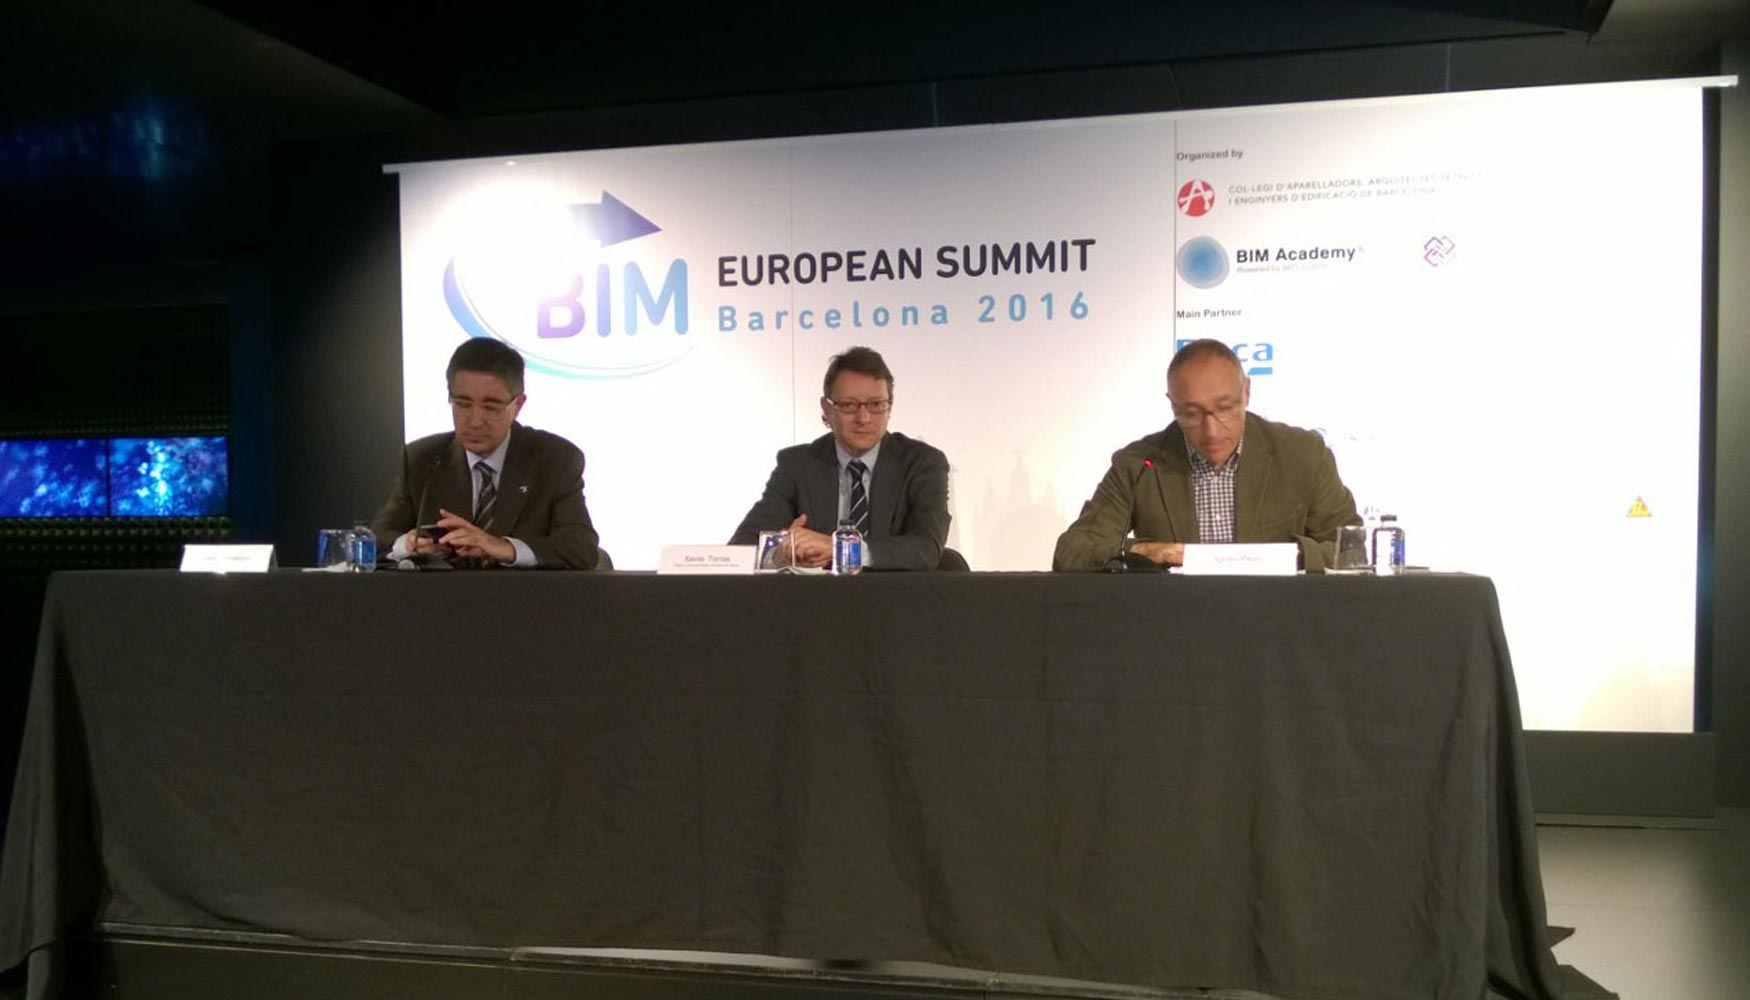 La BIM European Summit tendr lugar en Barcelona los das 18 y 19 de febrero